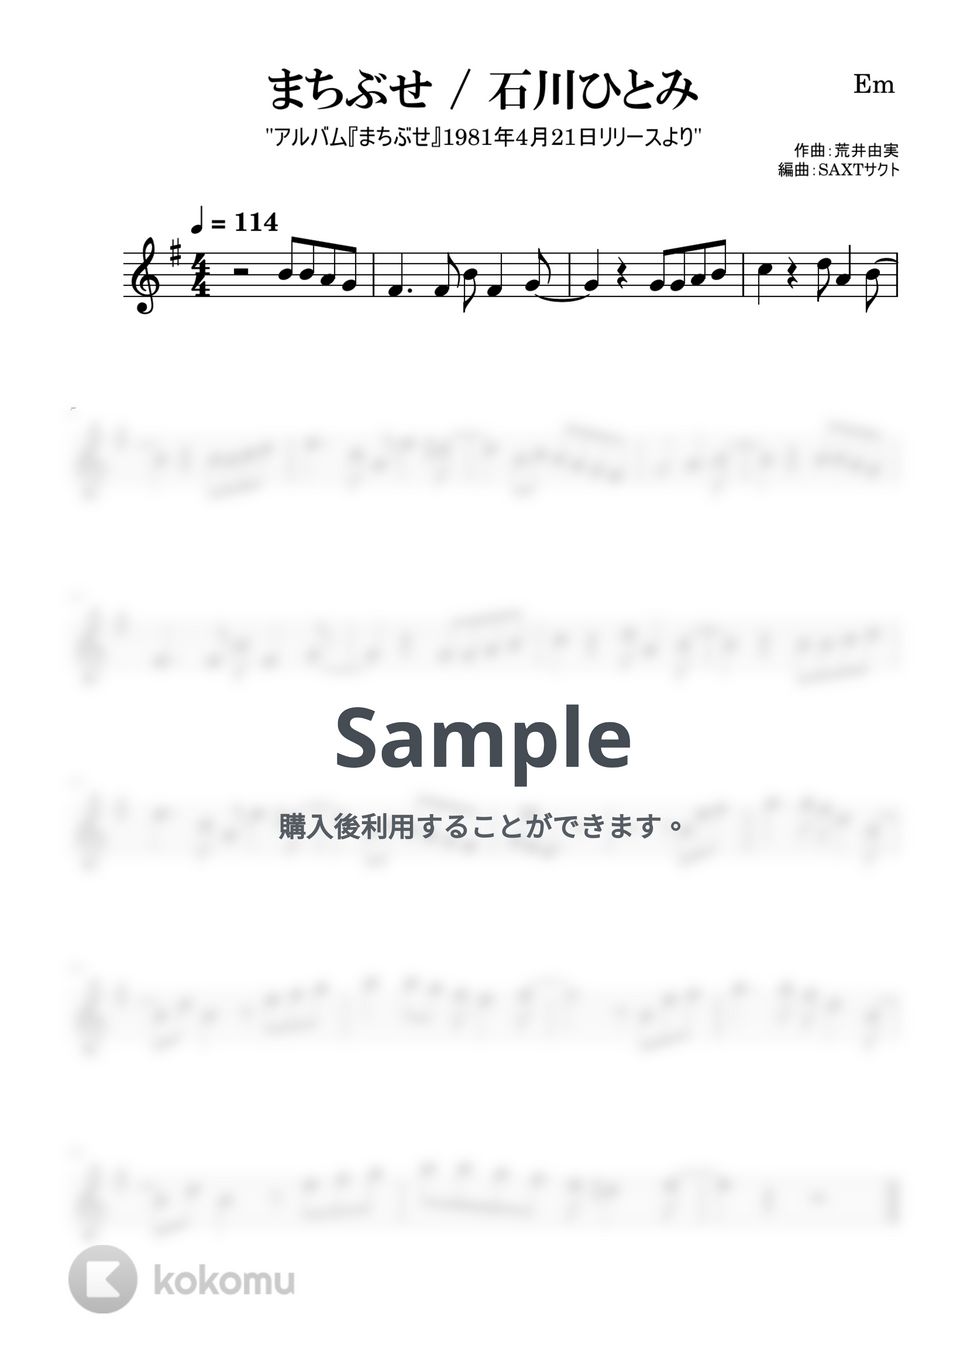 石川ひとみ - まちぶせ (めちゃラク譜) by SAXT